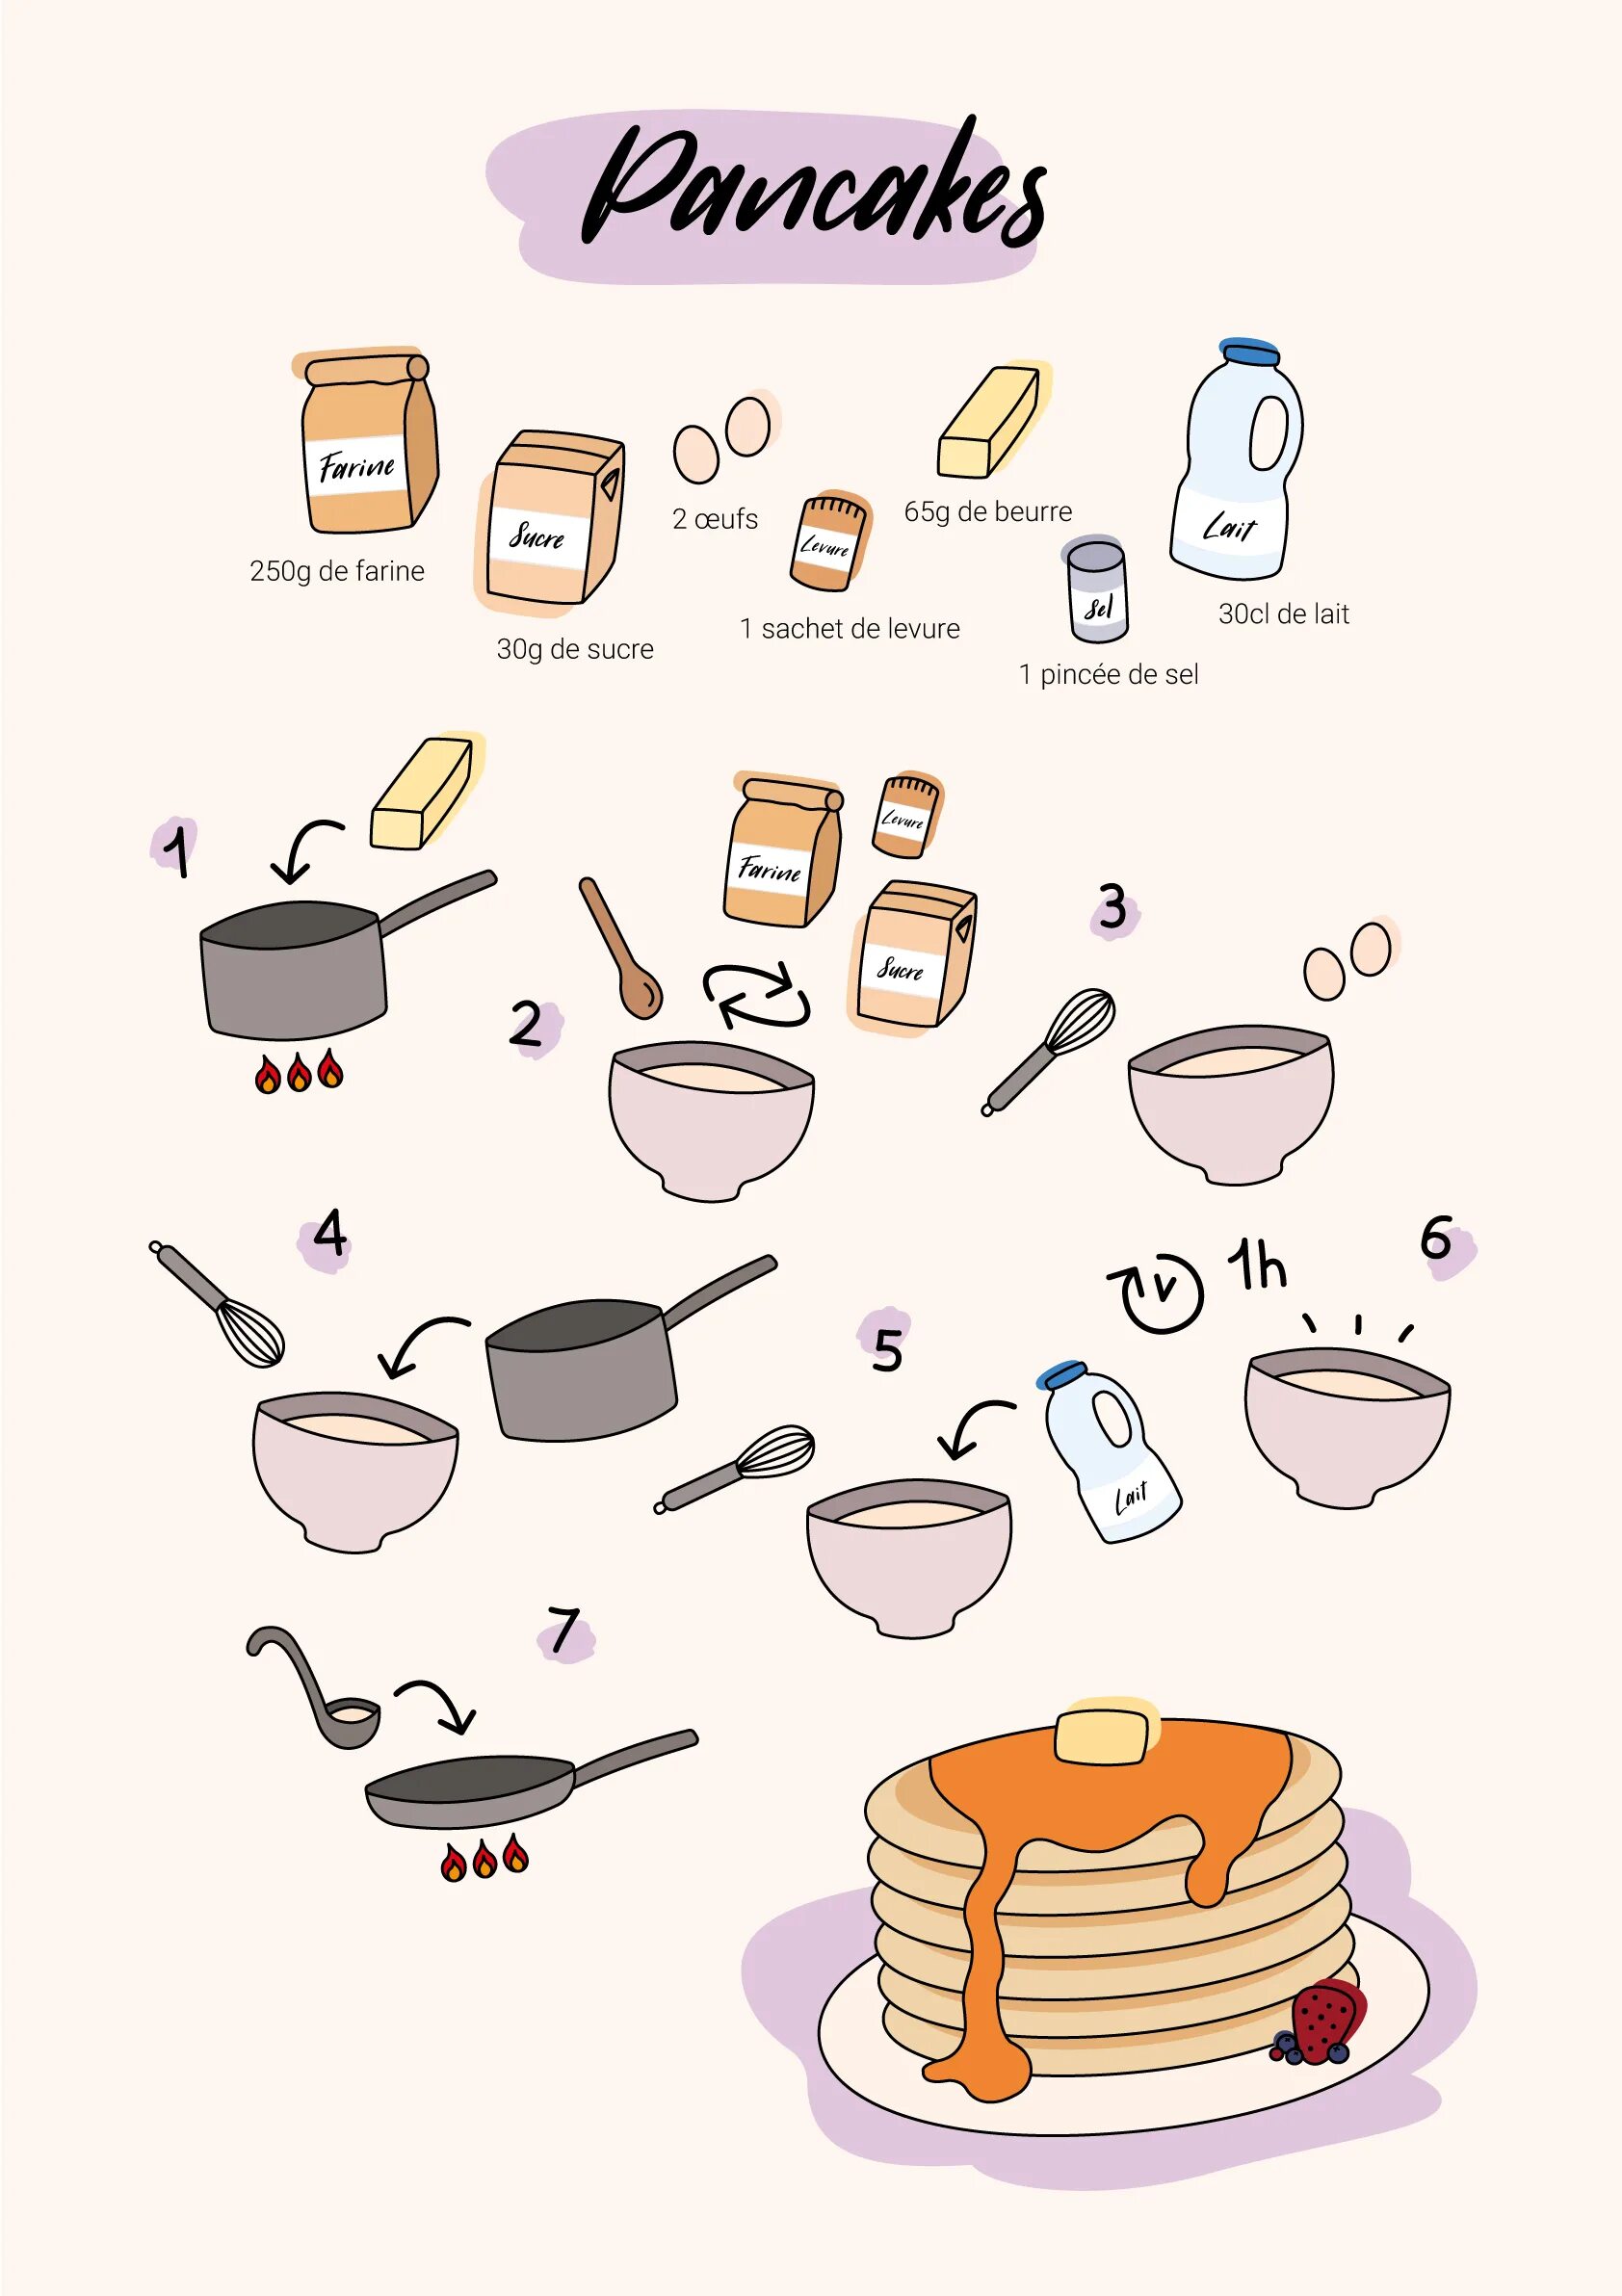 Рецепт блинов на английском кратко. Рецепт рисунок. Pancake задания для детей. Рецепт панкейков на английском языке. Рецепты в картинках для детей.